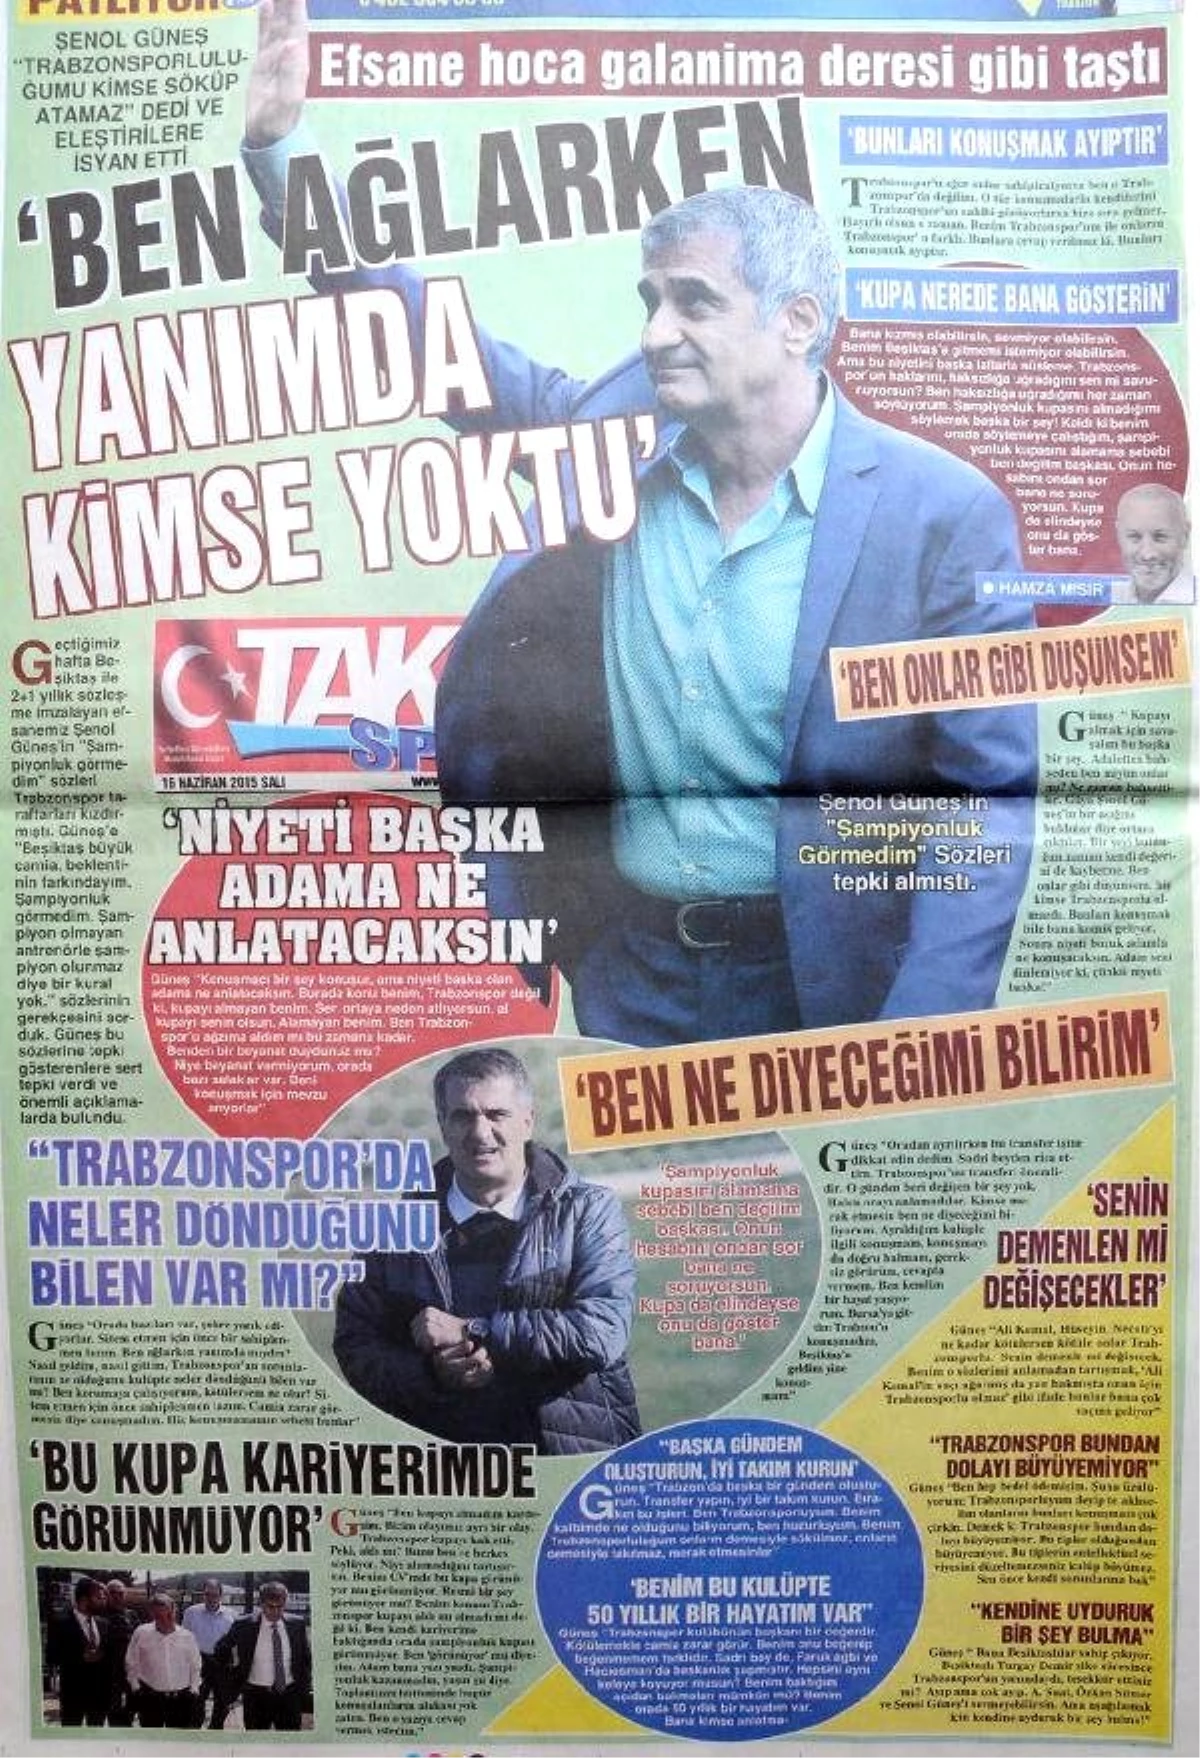 Güneş İsyan Etti: Trabzonsporluluğum Onların Demesiyle Sökülmez